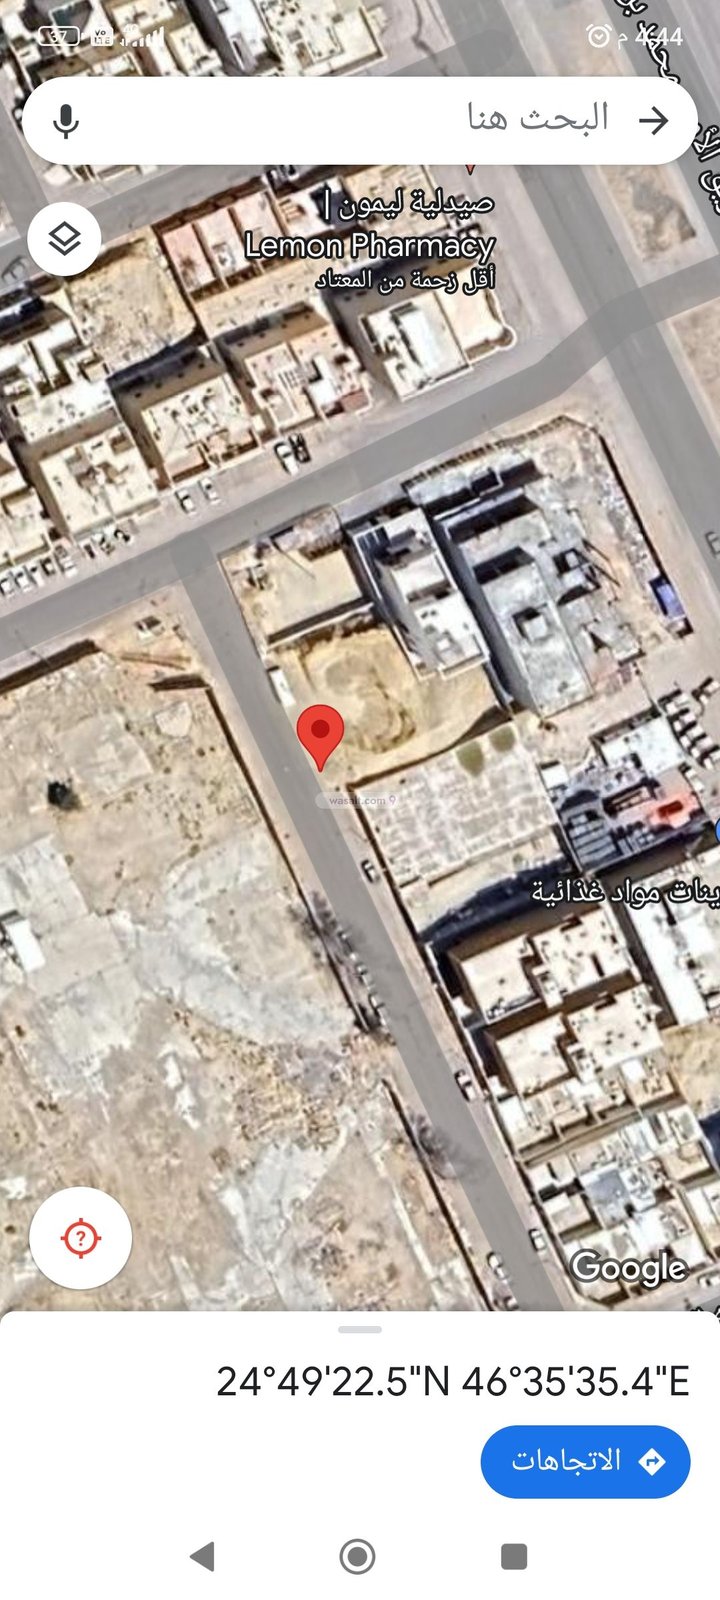 أرض 499 متر مربع شمالية شرقية على شارع 12م احد، جنوب الرياض، الرياض